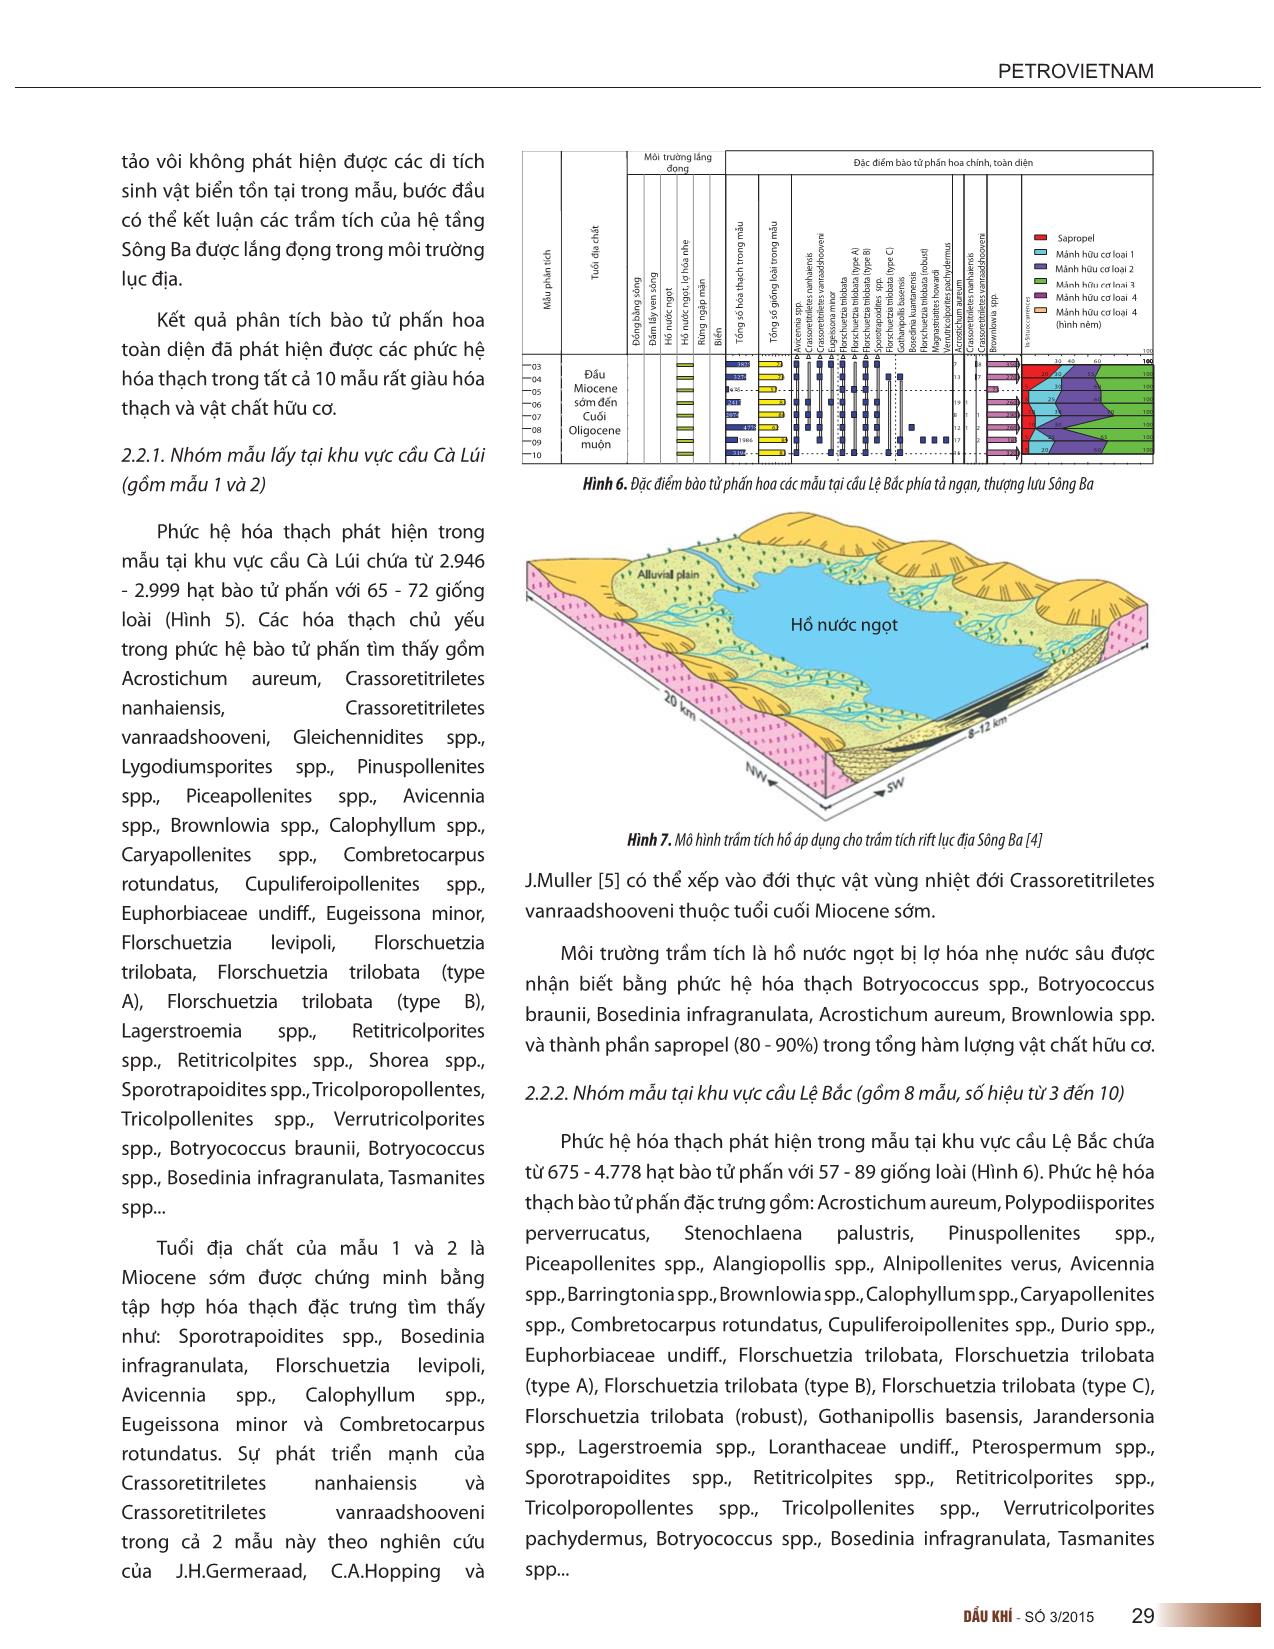 Phức hệ hóa thạch bào tử phấn hoa trong trầm tích rift lục địa hệ tầng sông ba trang 3